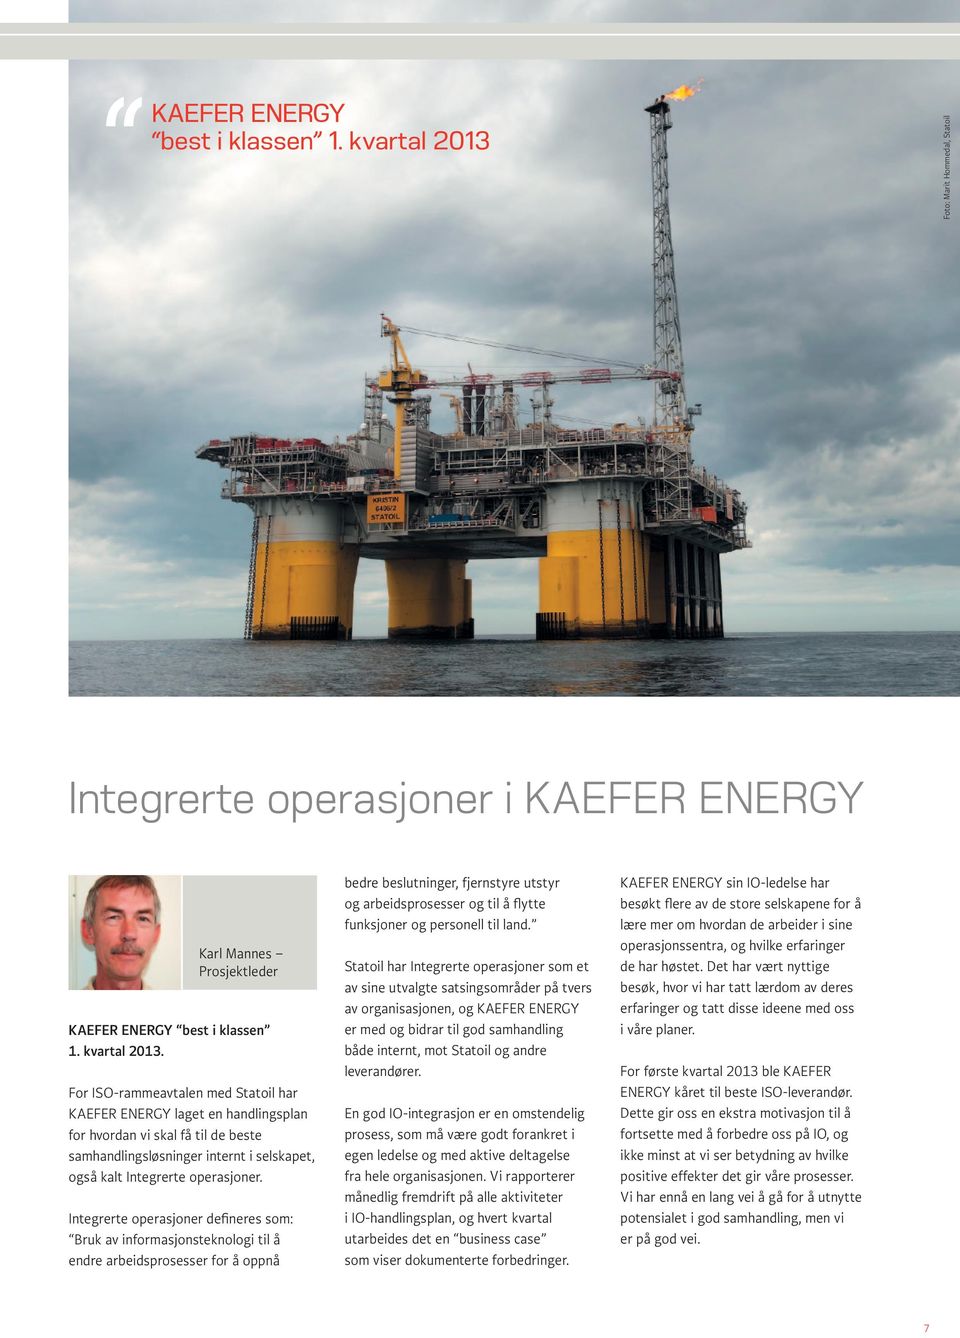 For ISO-rammeavtalen med Statoil har KAEFER ENERGY laget en handlingsplan for hvordan vi skal få til de beste samhandlingsløsninger internt i selskapet, også kalt Integrerte operasjoner.